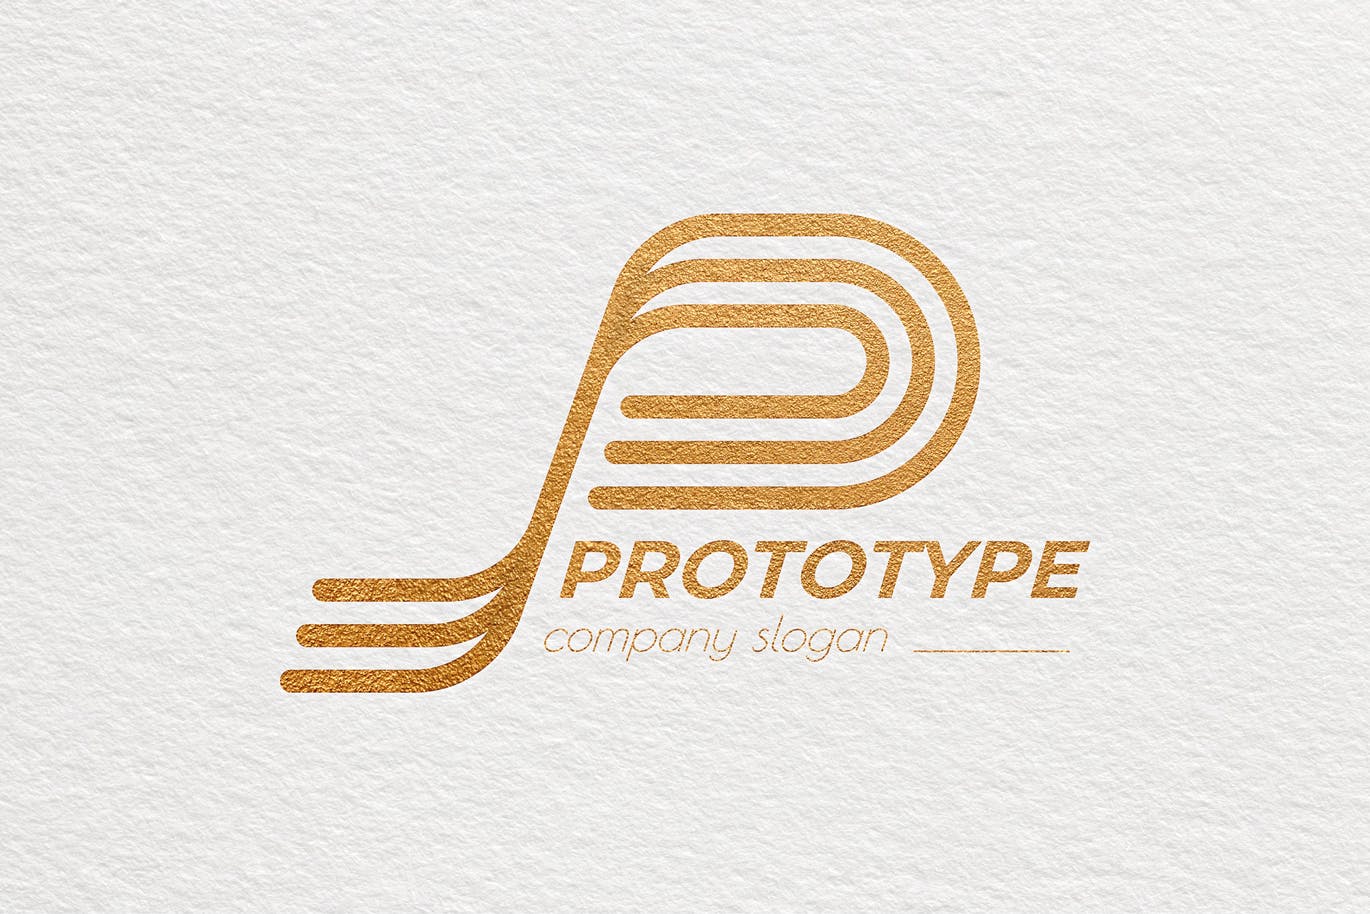 原型设计主题创意图形Logo设计16设计网精选模板 Prototype Creative Logo Template插图(3)